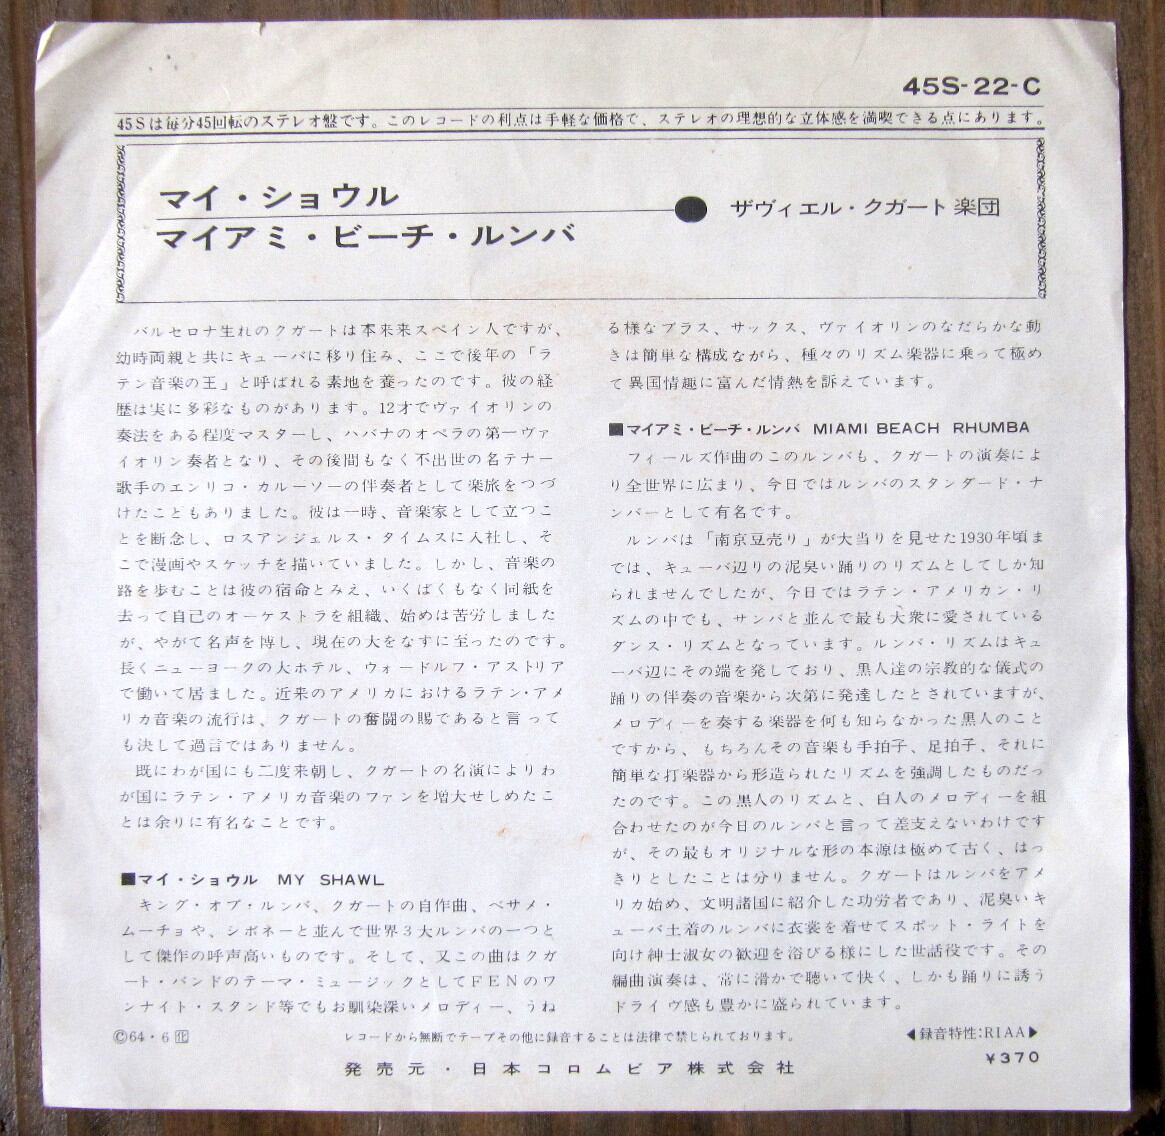 64年ルンバ【EP】マイ・ショール /ザヴィエル・クガート楽団 音盤窟レコード